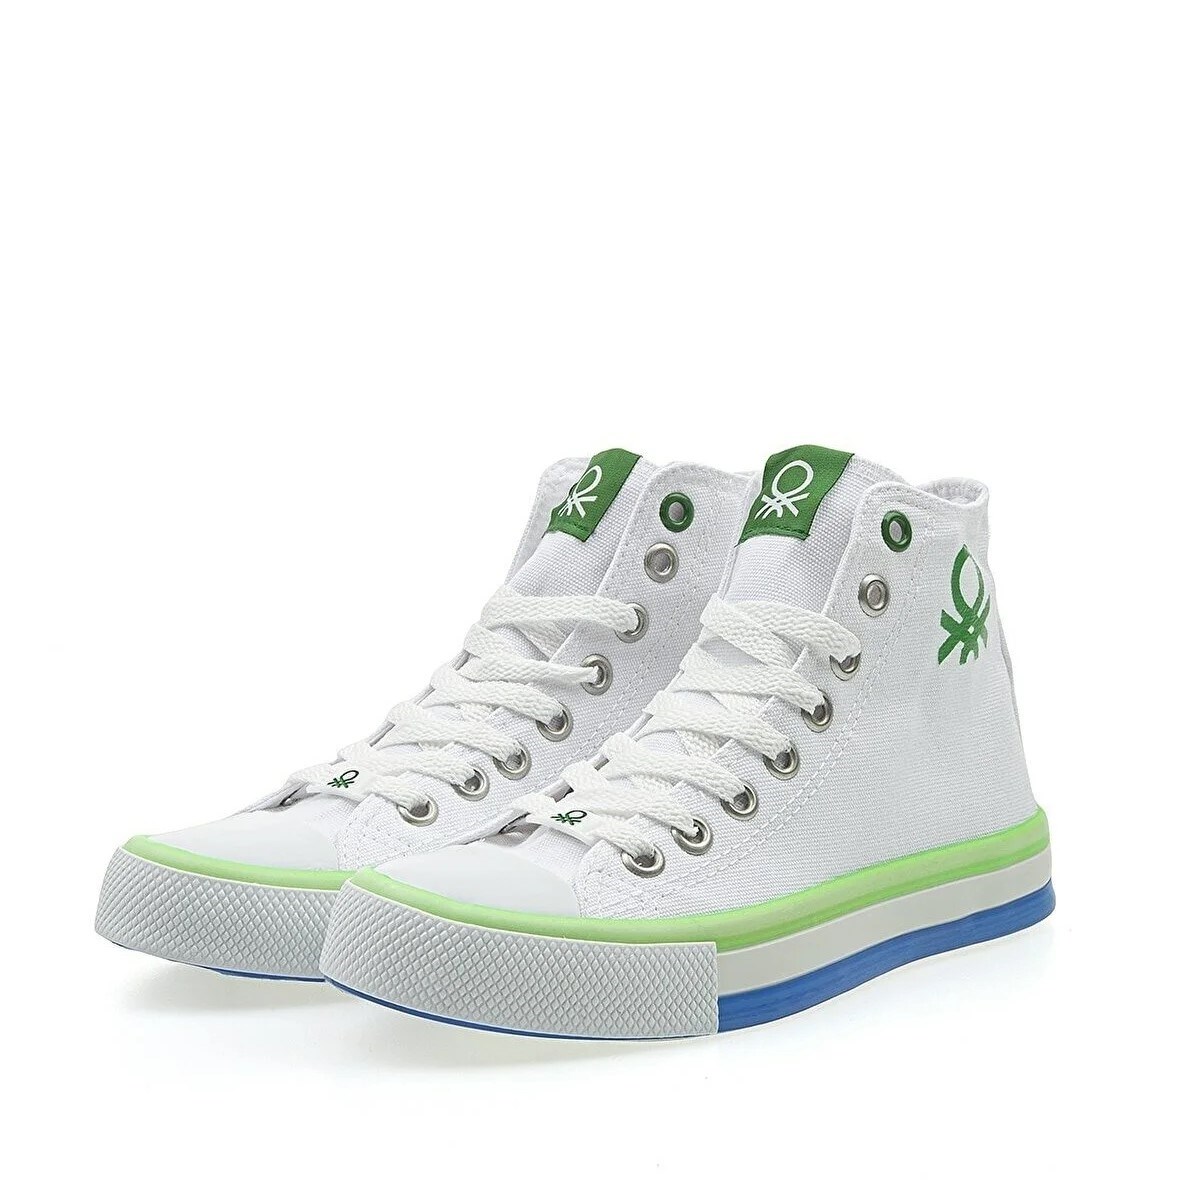 Benetton Kadın Ayakkabı BN-30189 Beyaz-Yeşil